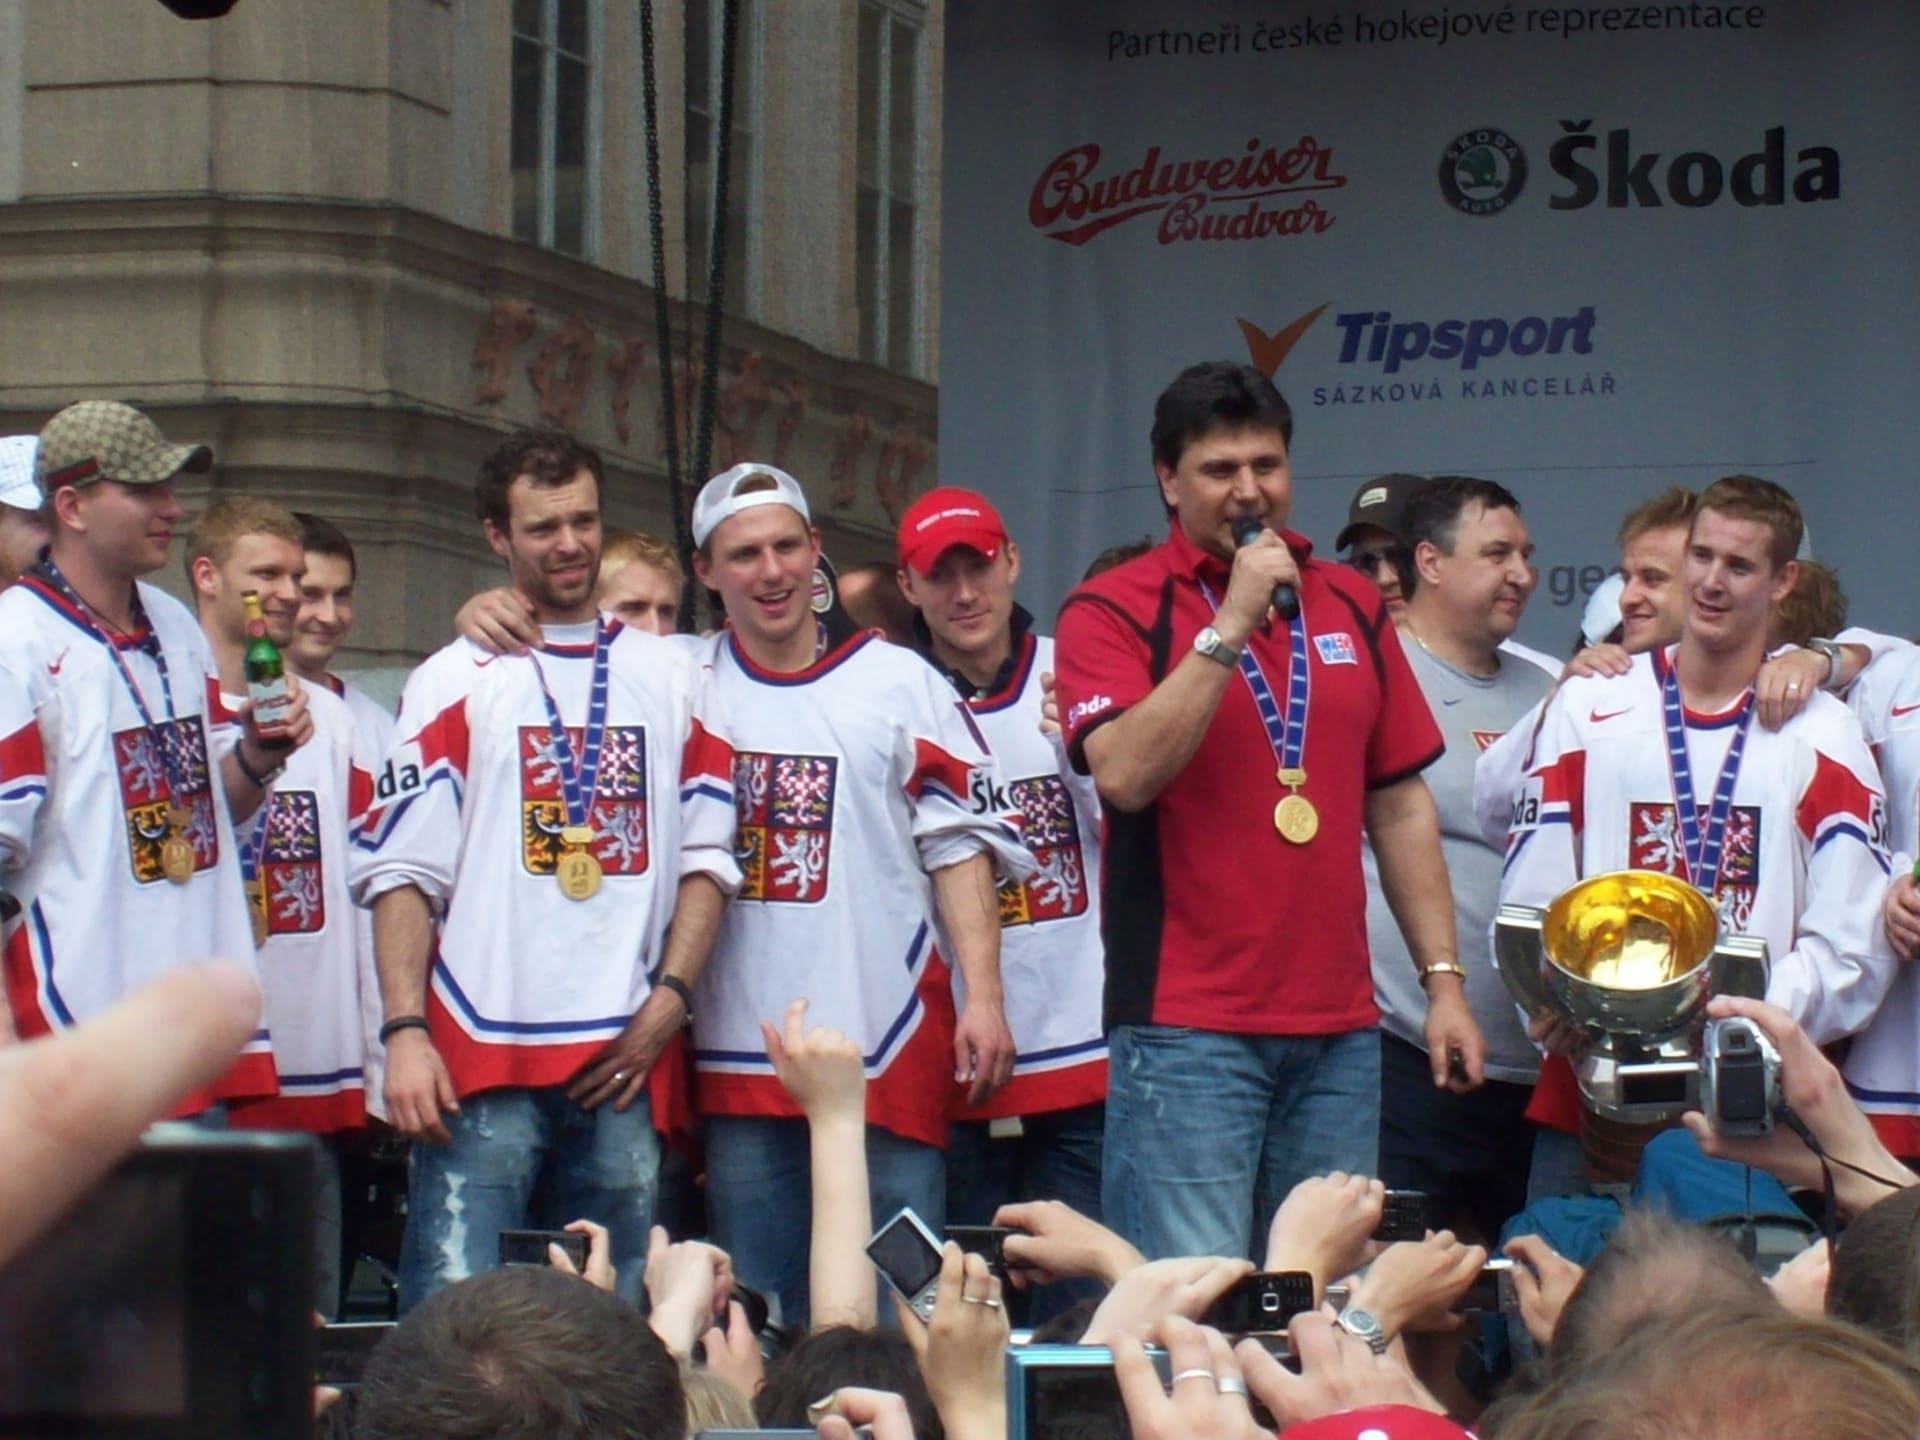 Čeští hokejisté naposledy vyhráli šampionát v roce 2010. Pomohly jim rituály?